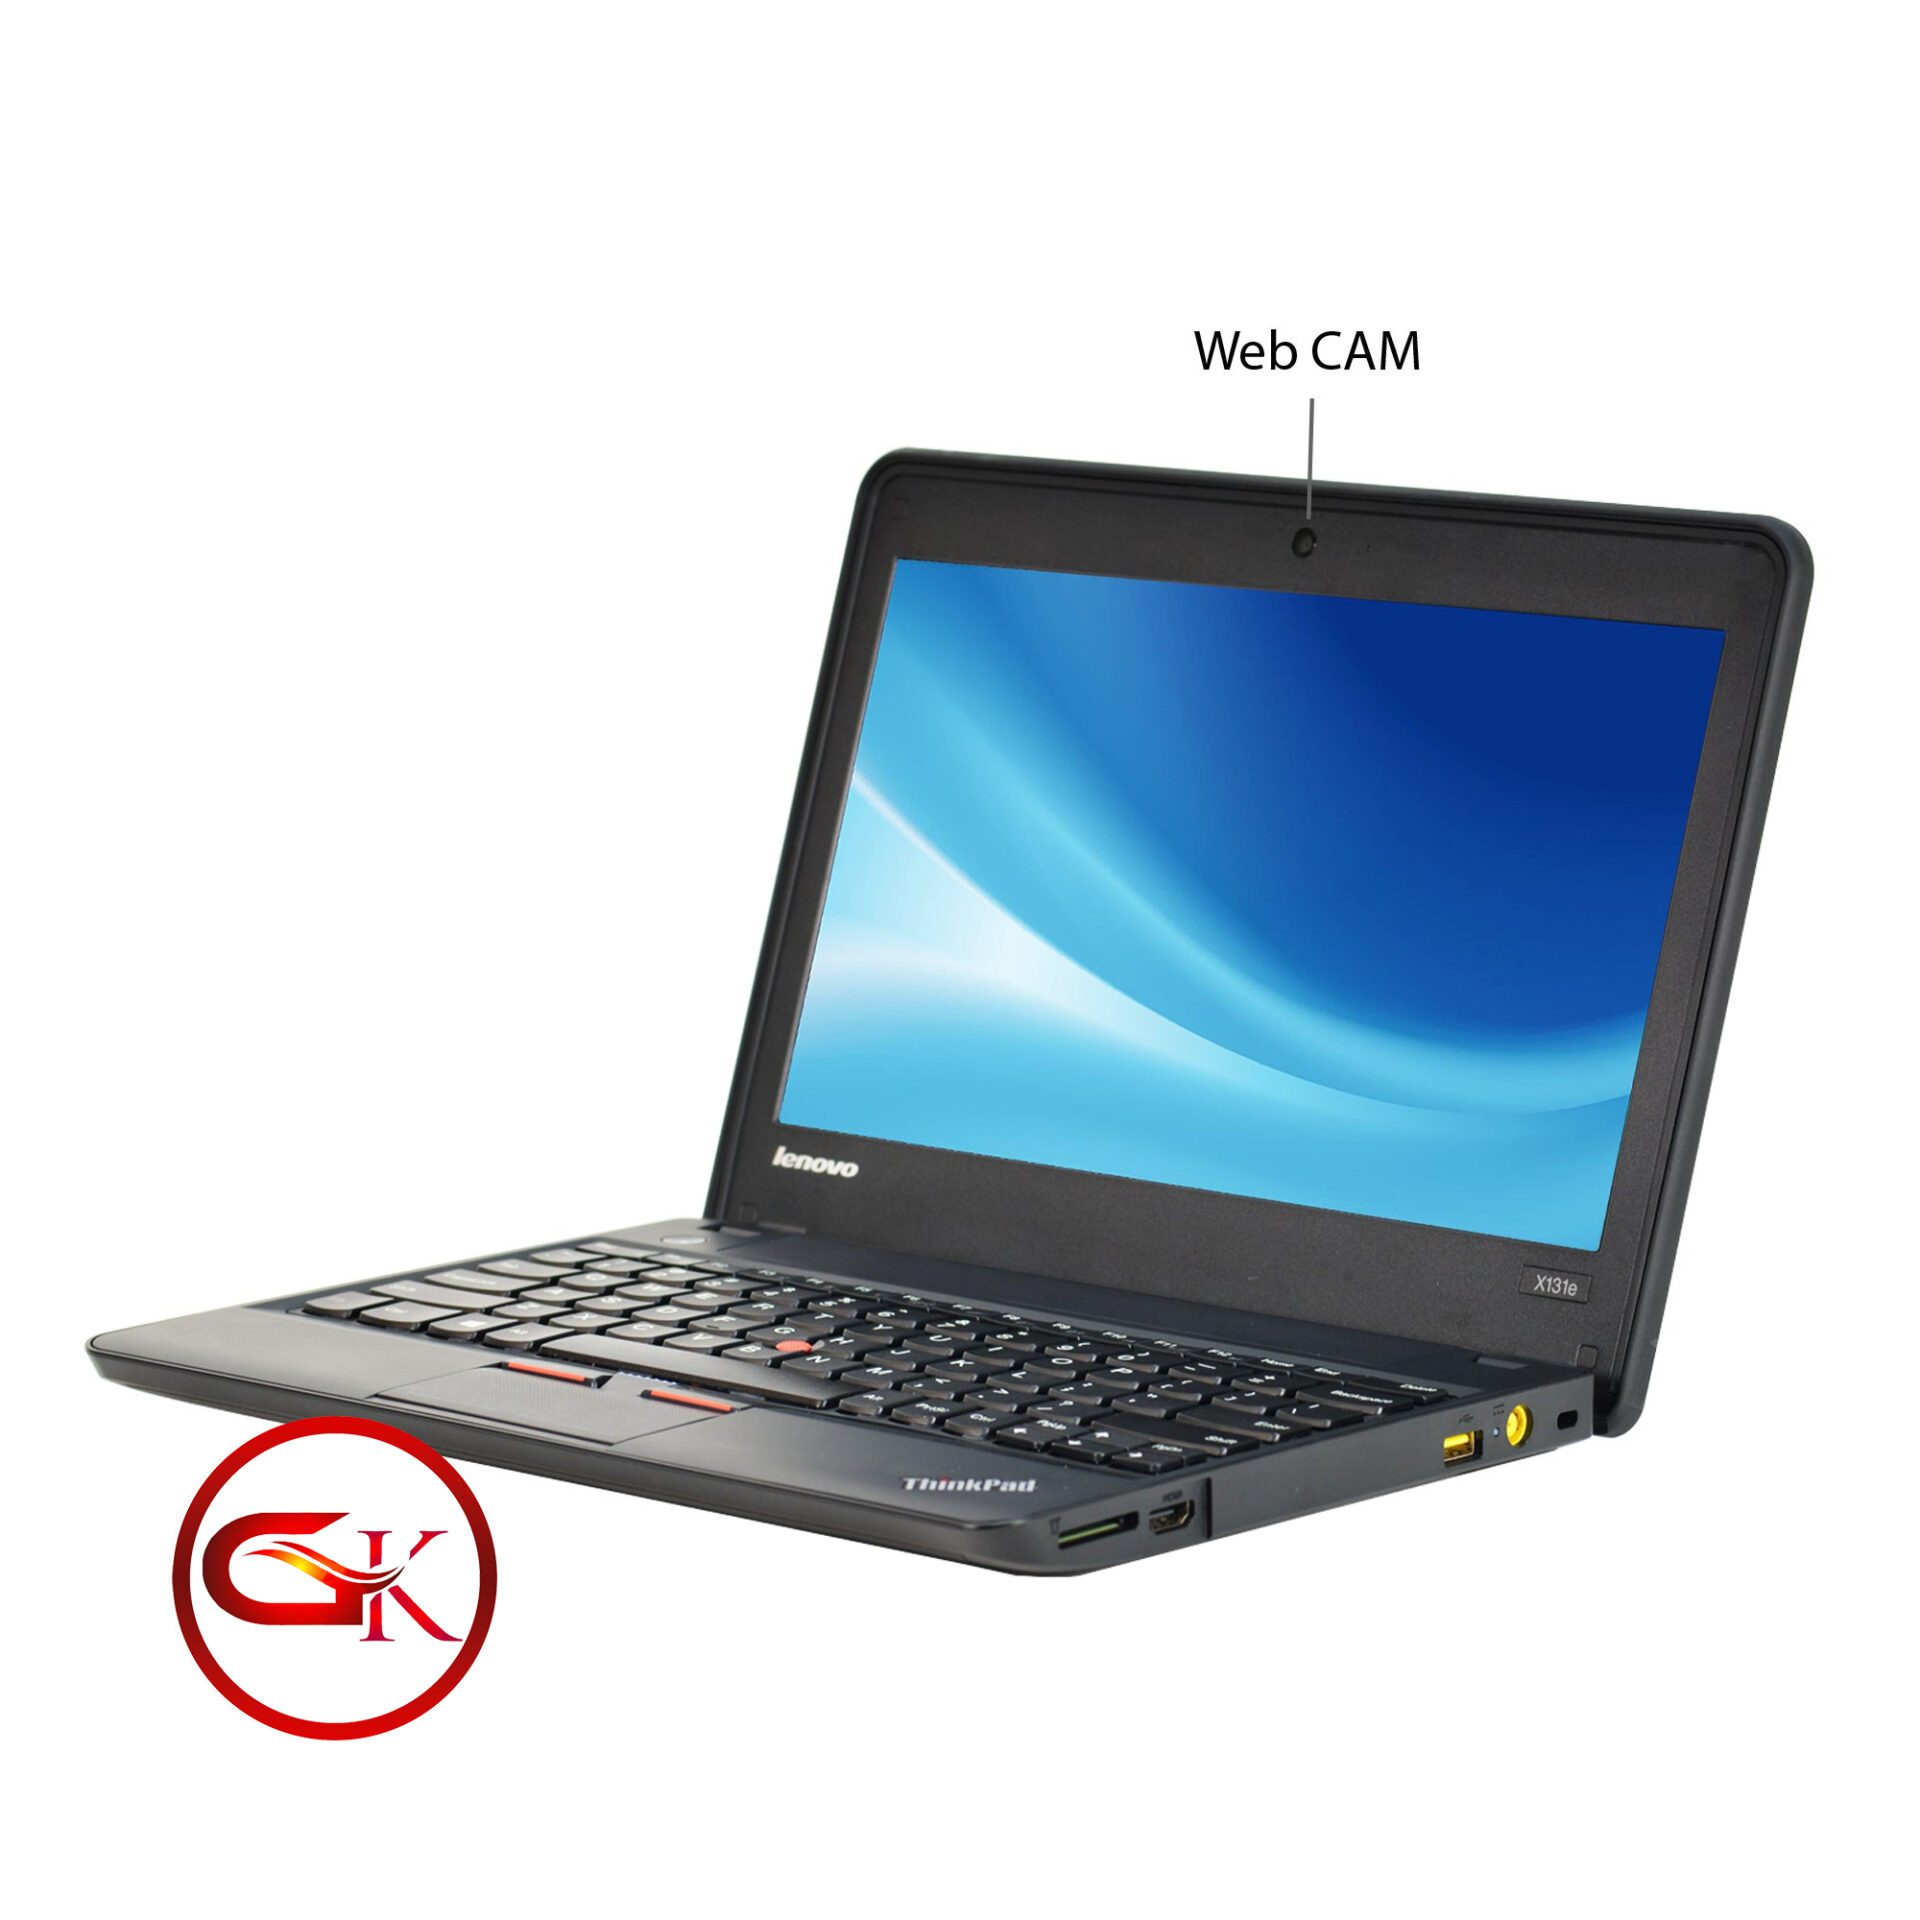 Lenovo ThinkPad X131